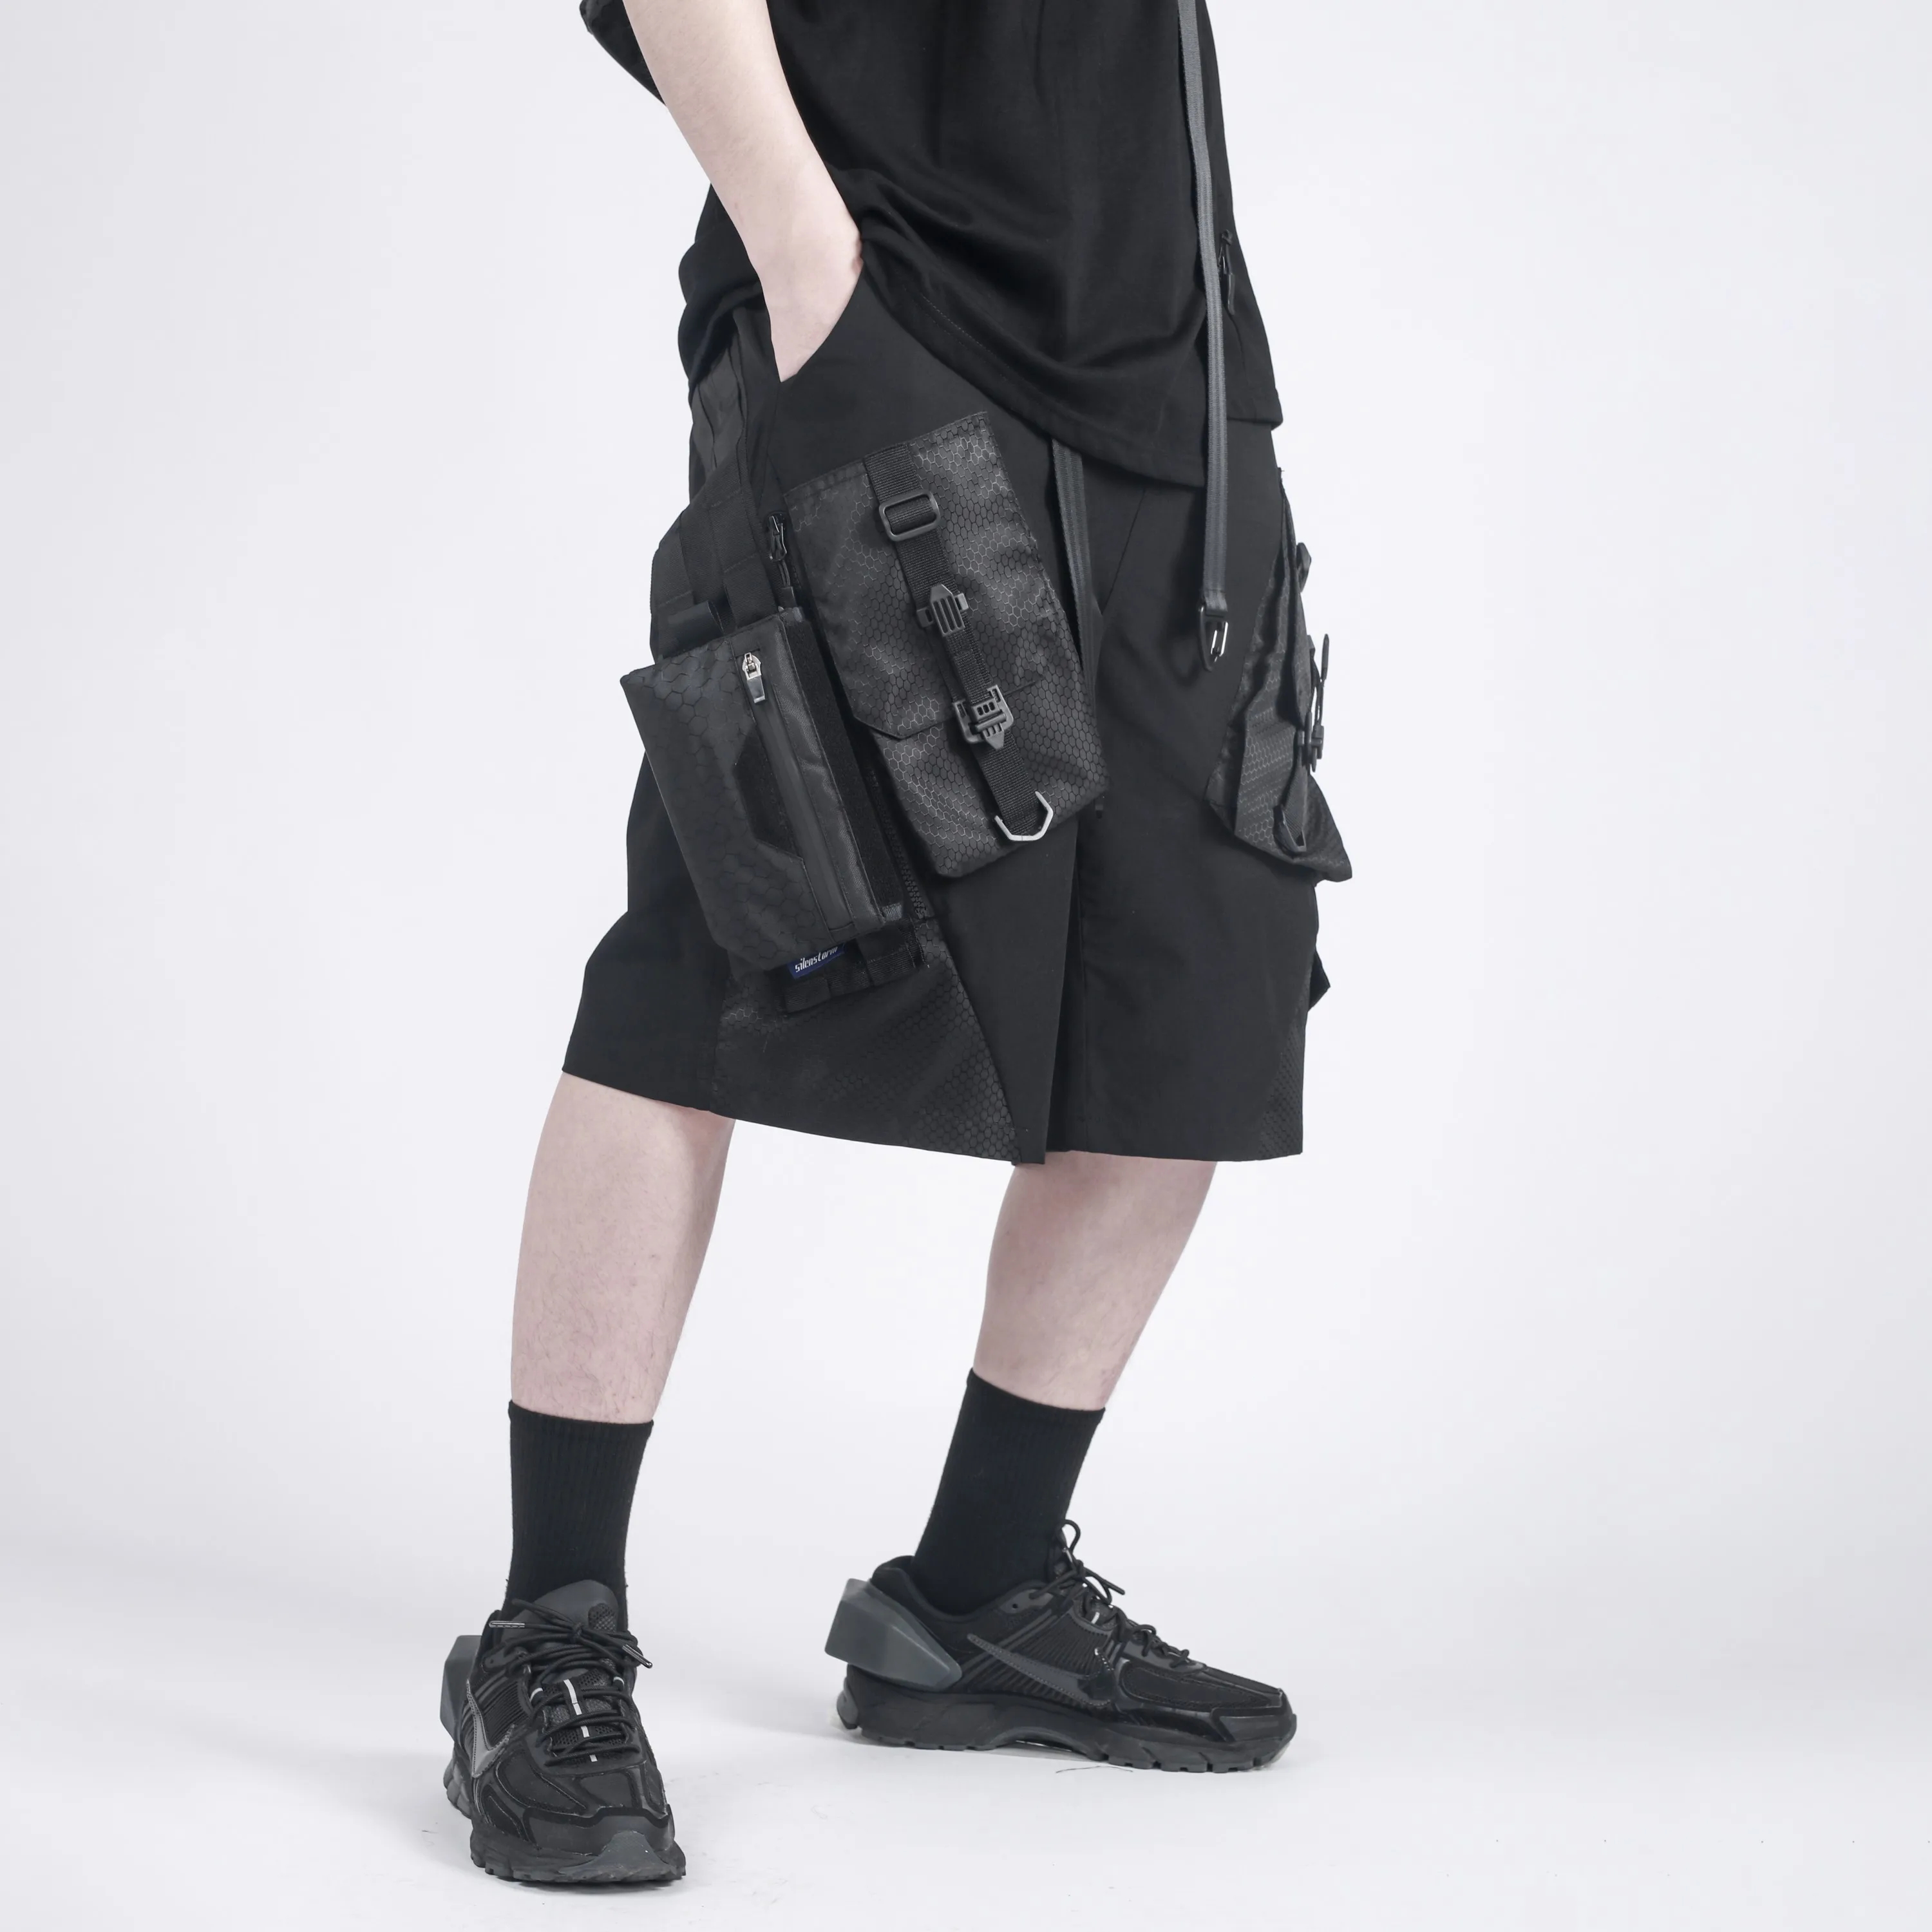 SILENSTORM 21SS Tactical Shorts Double Side Molle Pockets Techwear Ninjawear Darkwear Streetwear Futuristic cyberpunk